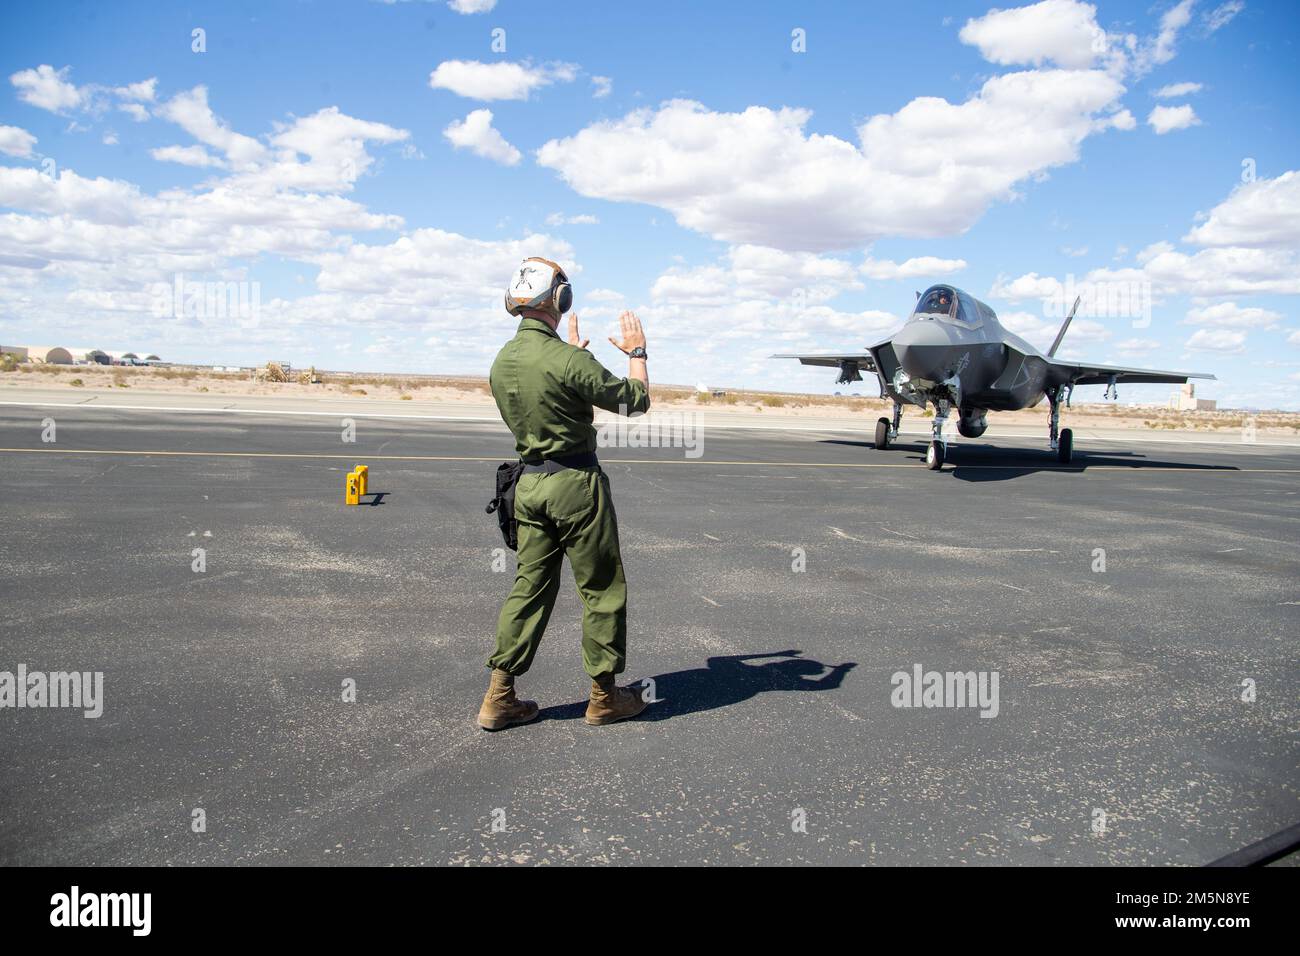 UN EE.UU F-35B Lightning II del Cuerpo de Marines asignado al Escuadrón de Armas y Tácticas de Aviación de Marines Uno (MAWTS-1), taxis antes de repostar en tierra durante el curso de Instructor de Armas y Tácticas (WTI) 2-22, en Laguna Army Airfield, Yuma, Arizona, 29 de marzo de 2022. WTI es un evento de capacitación de siete semanas organizado por MAWTS-1, que proporciona capacitación táctica avanzada estandarizada y certificación de las calificaciones de los instructores de la unidad para apoyar la capacitación y preparación de la aviación marina, y ayuda en el desarrollo y empleo de armas y tácticas de aviación. Foto de stock